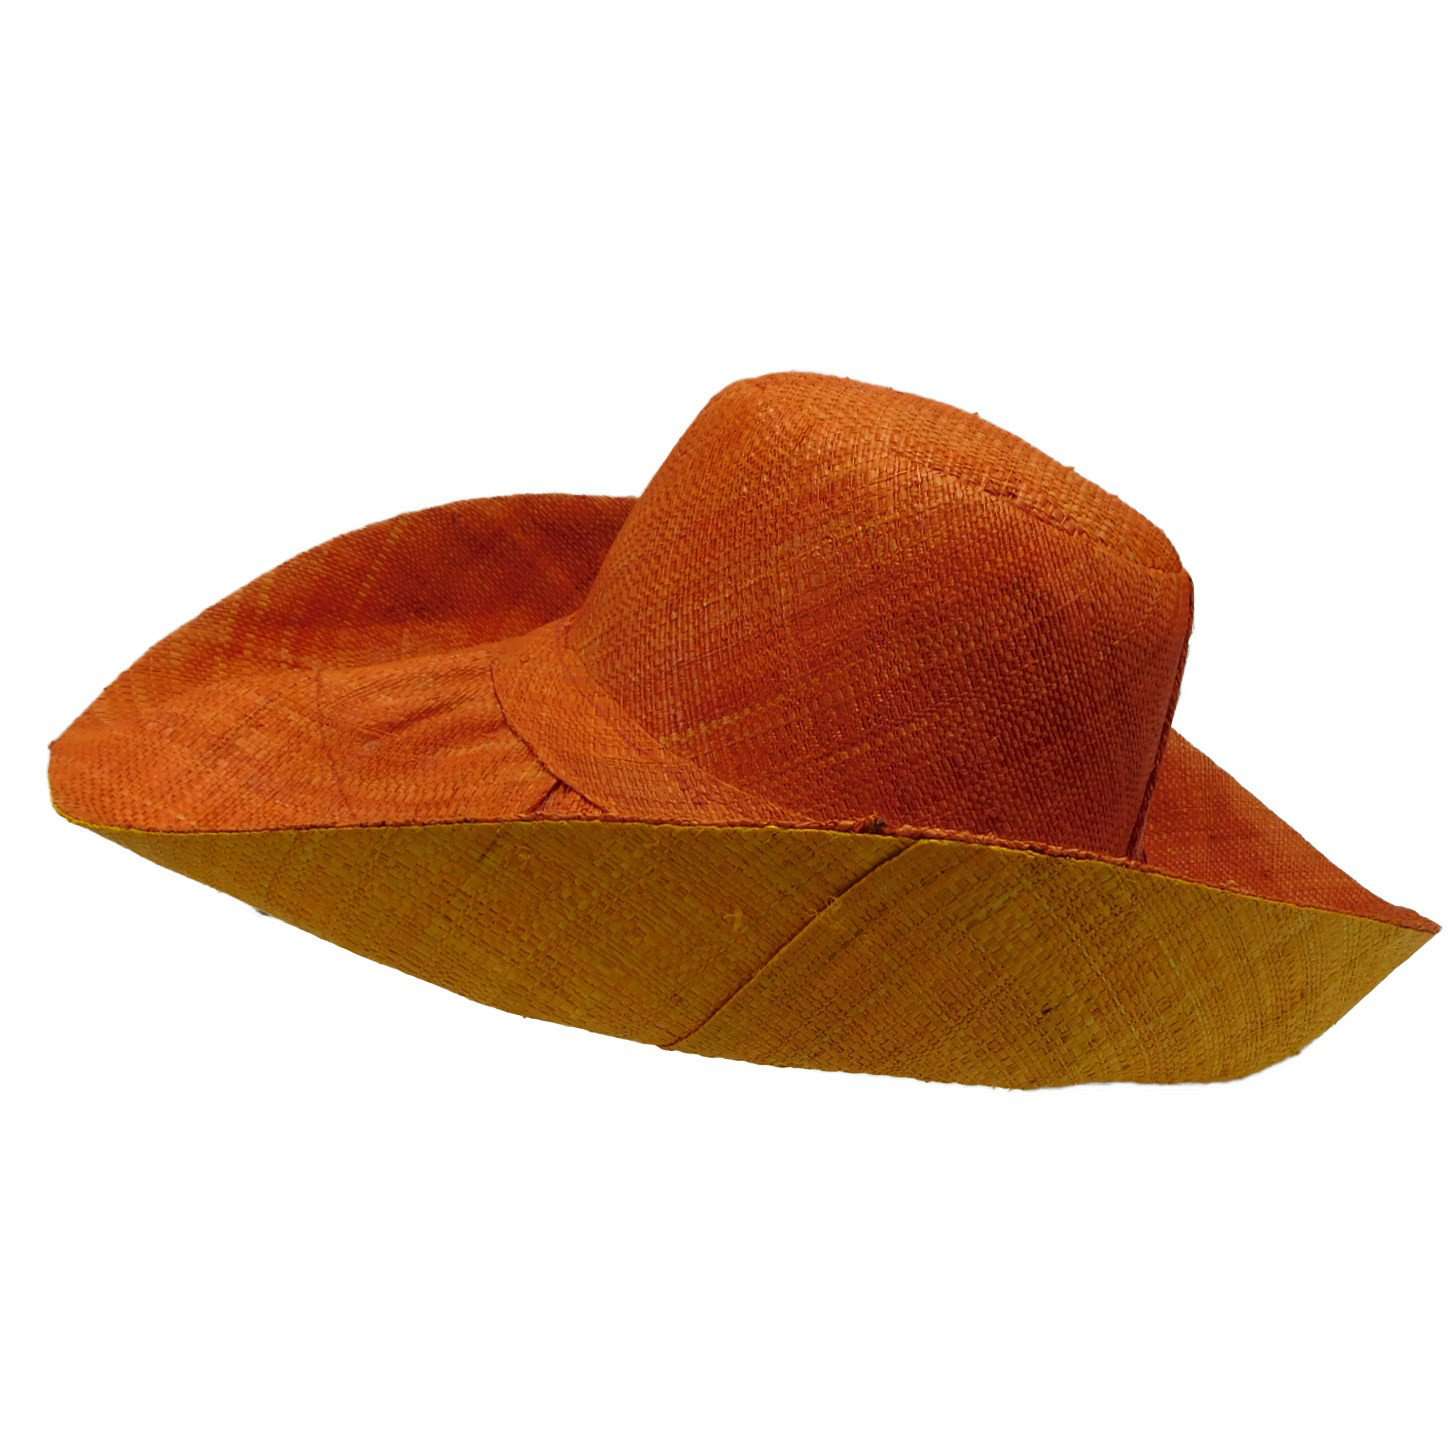 Madagascar Raffia Beach Hat, Kettle Brim Hat - SetarTrading Hats 